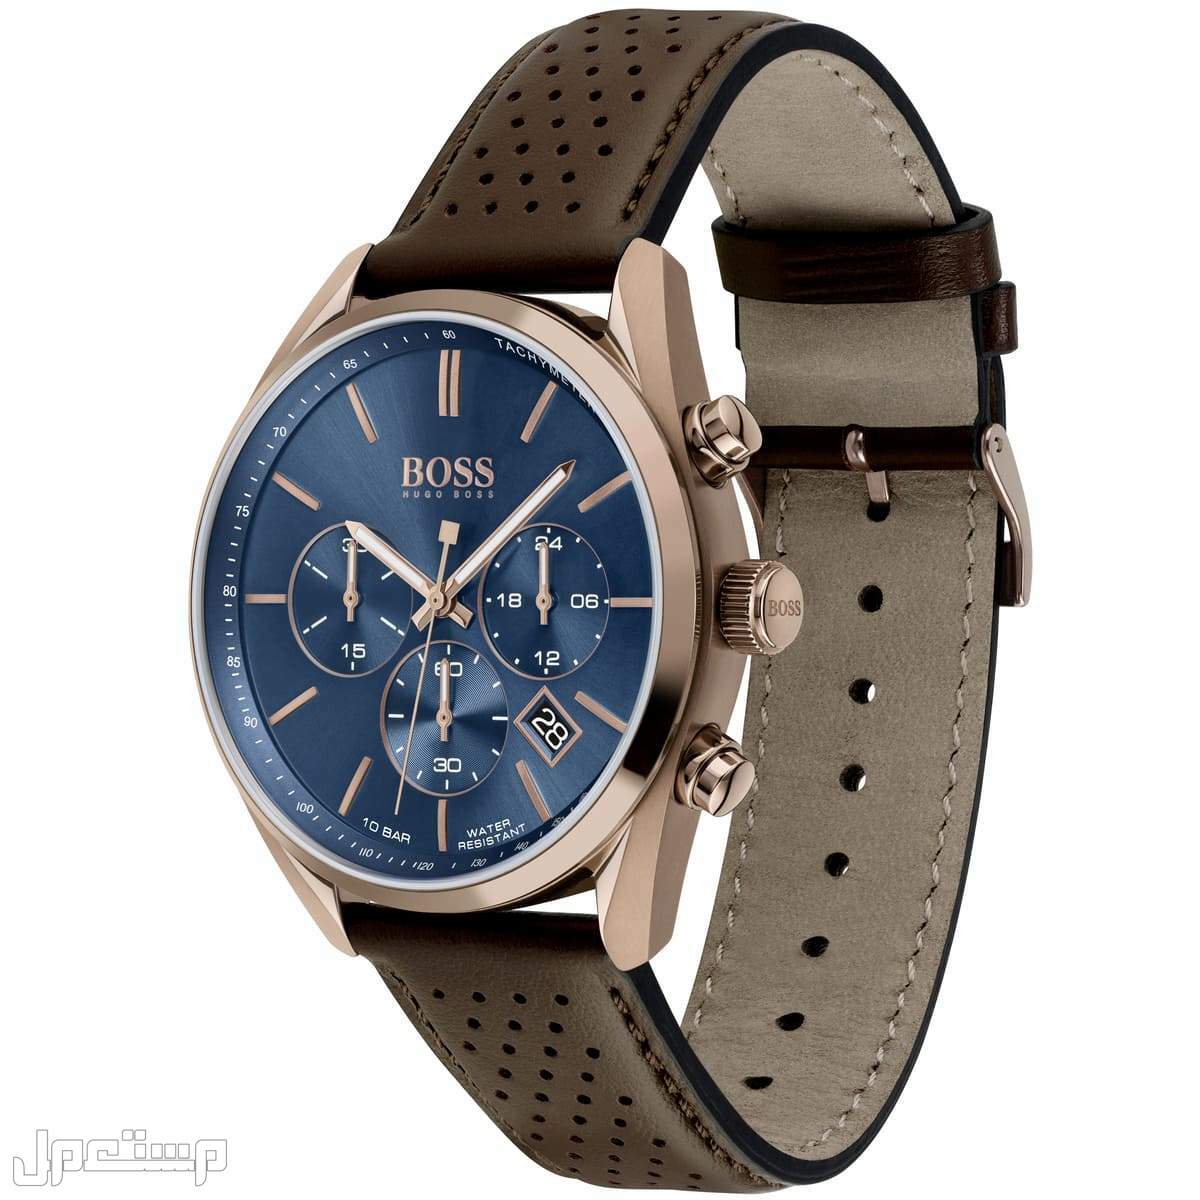 أفضل ساعات بوس Boss الأكثر مبيعا هذا العام وأسعارها في مصر ساع 1513817-hugo-boss-watch-men-blue-dial-leather-brown-strap-quartz-analog-chro